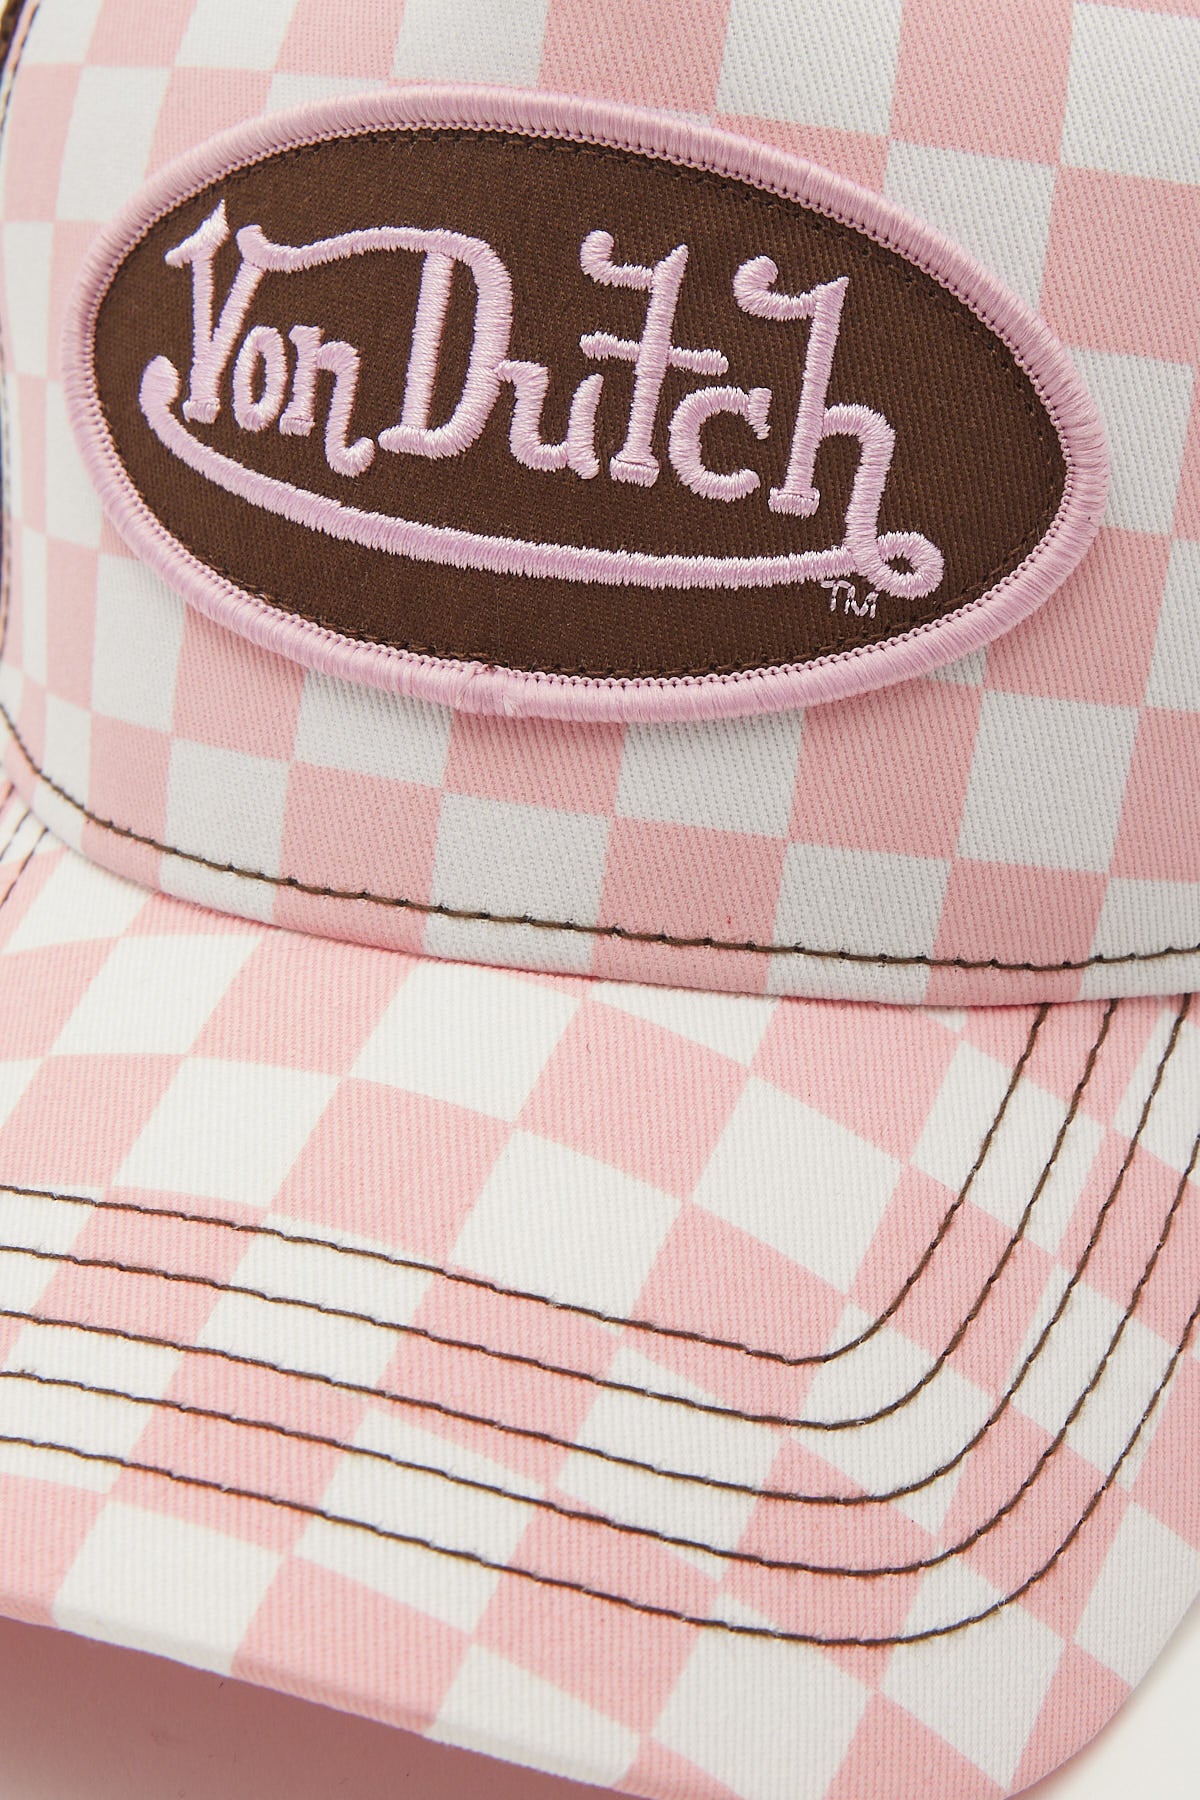 Von Dutch Pink White Checker Trucker Hat Pink/White Check